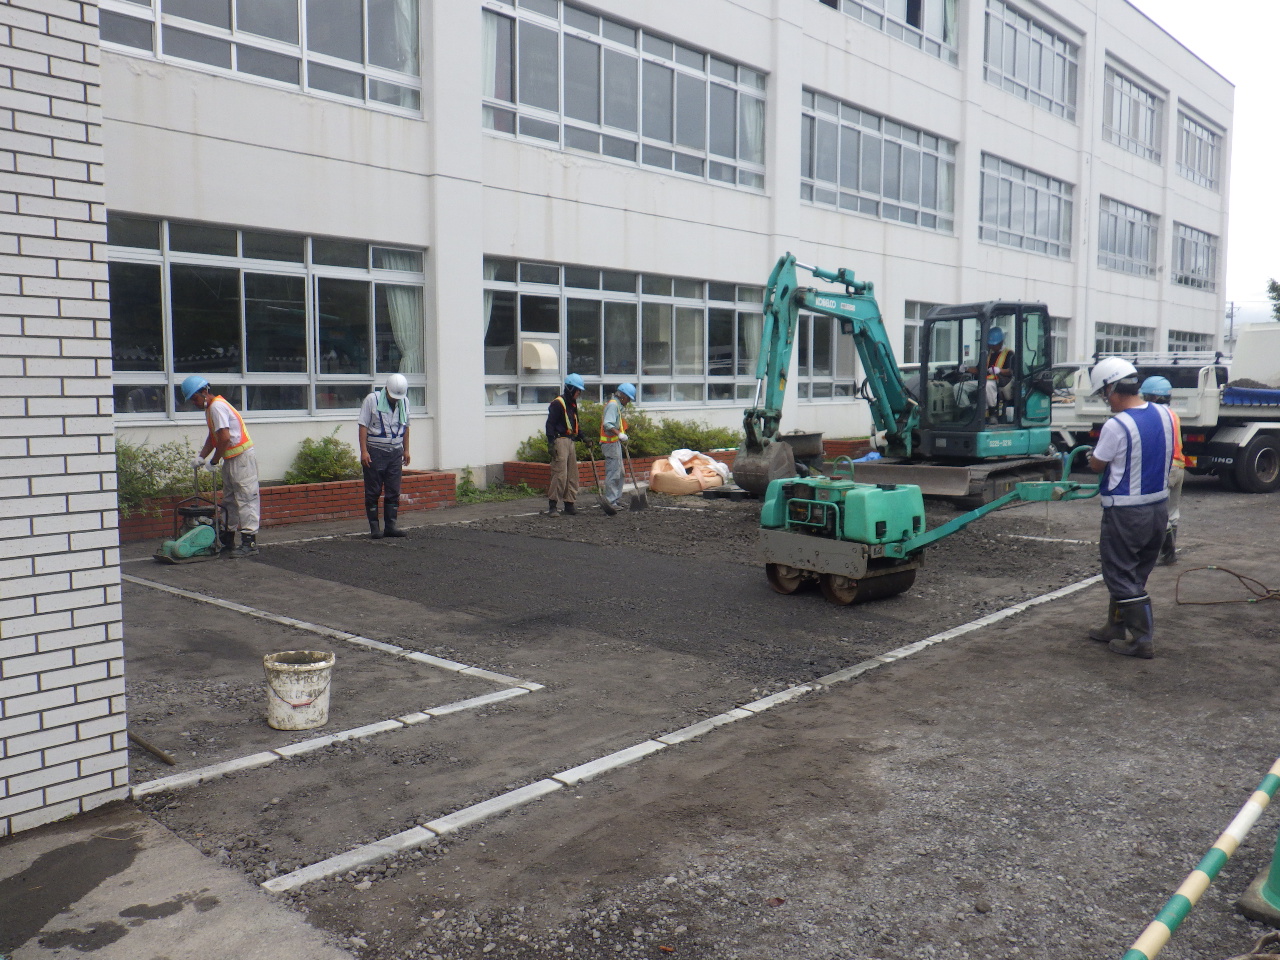 伊達中学校の身障者用駐車場を整備しました 株式会社 永井組 北海道伊達 市で公共事業をはじめ 各種土木工事 管工事 水道施設工事の請負 維持管理を行っております